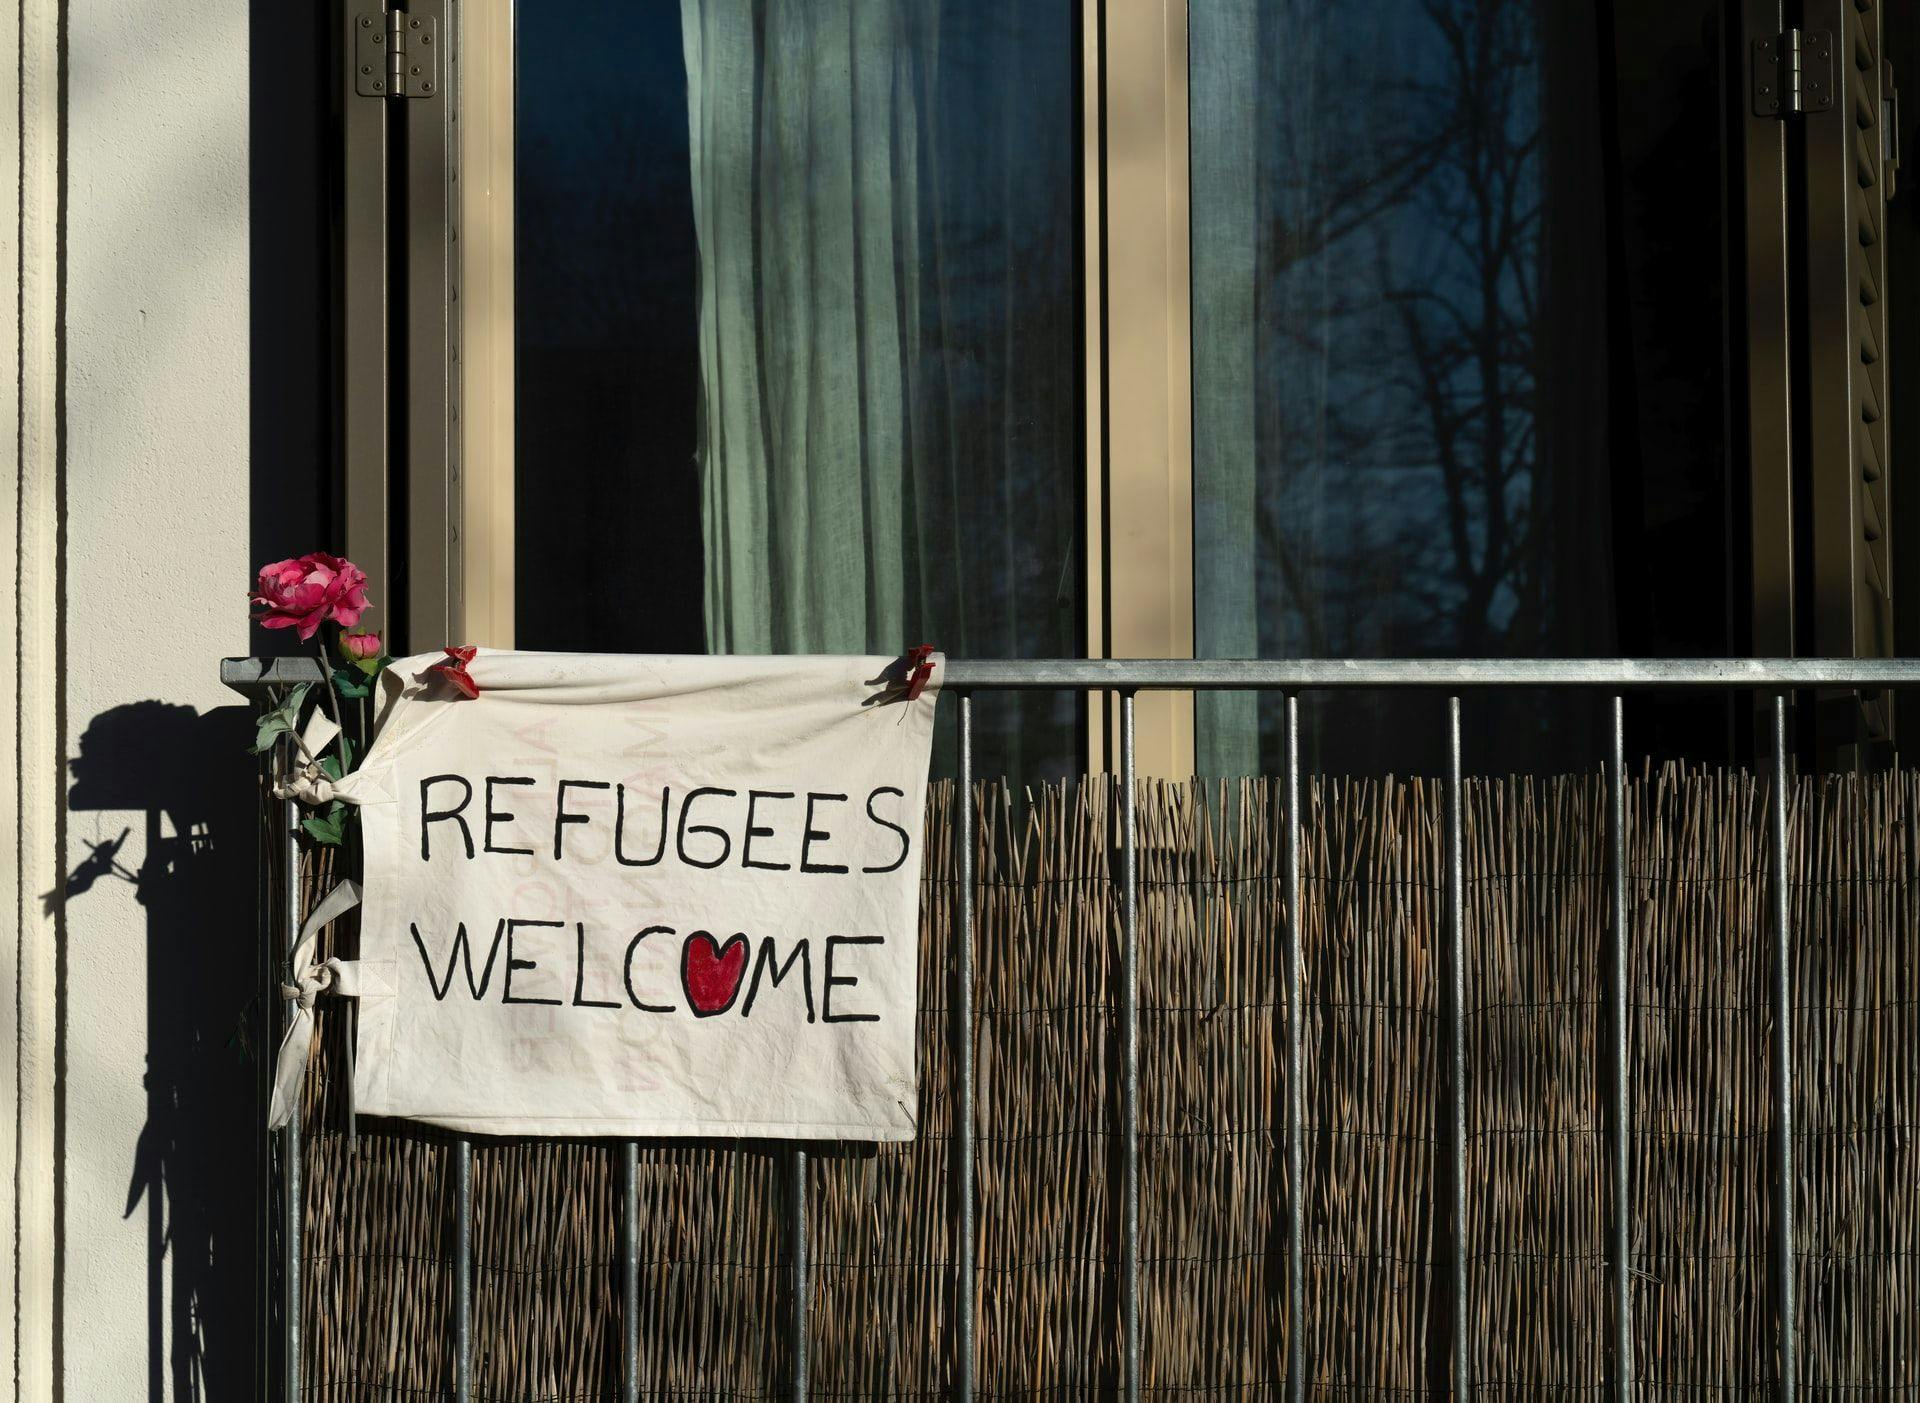 Люксембург принимает 98% беженцев. С какими проблемами сталкиваются те, кому отказывают?